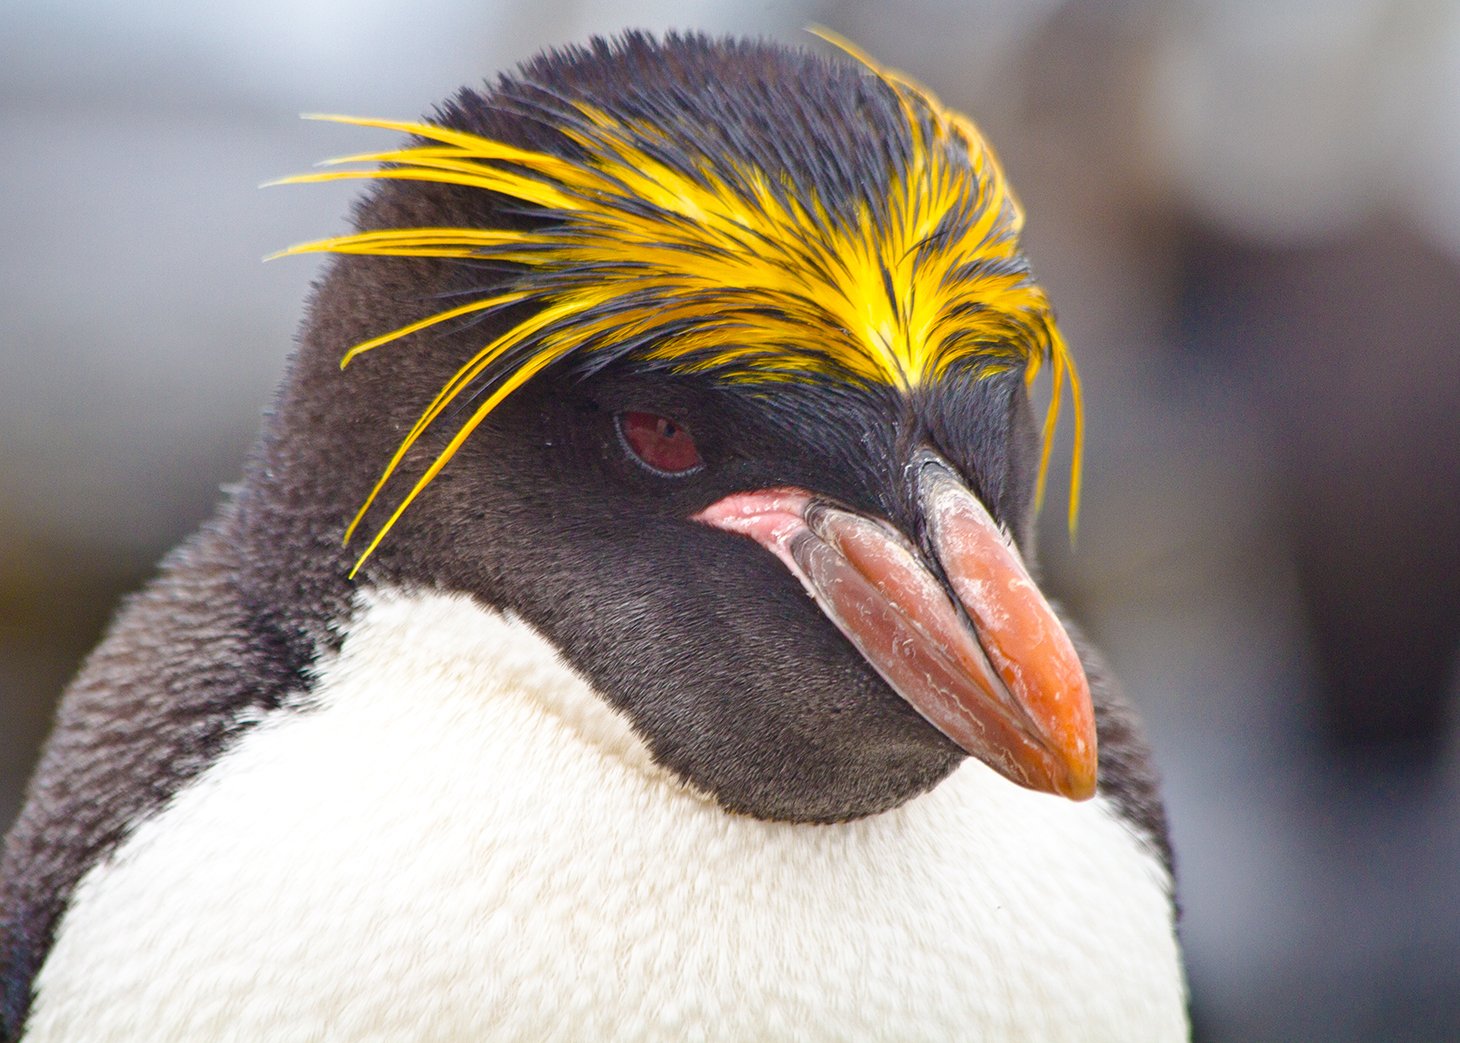 Club Penguin – a parents' guide